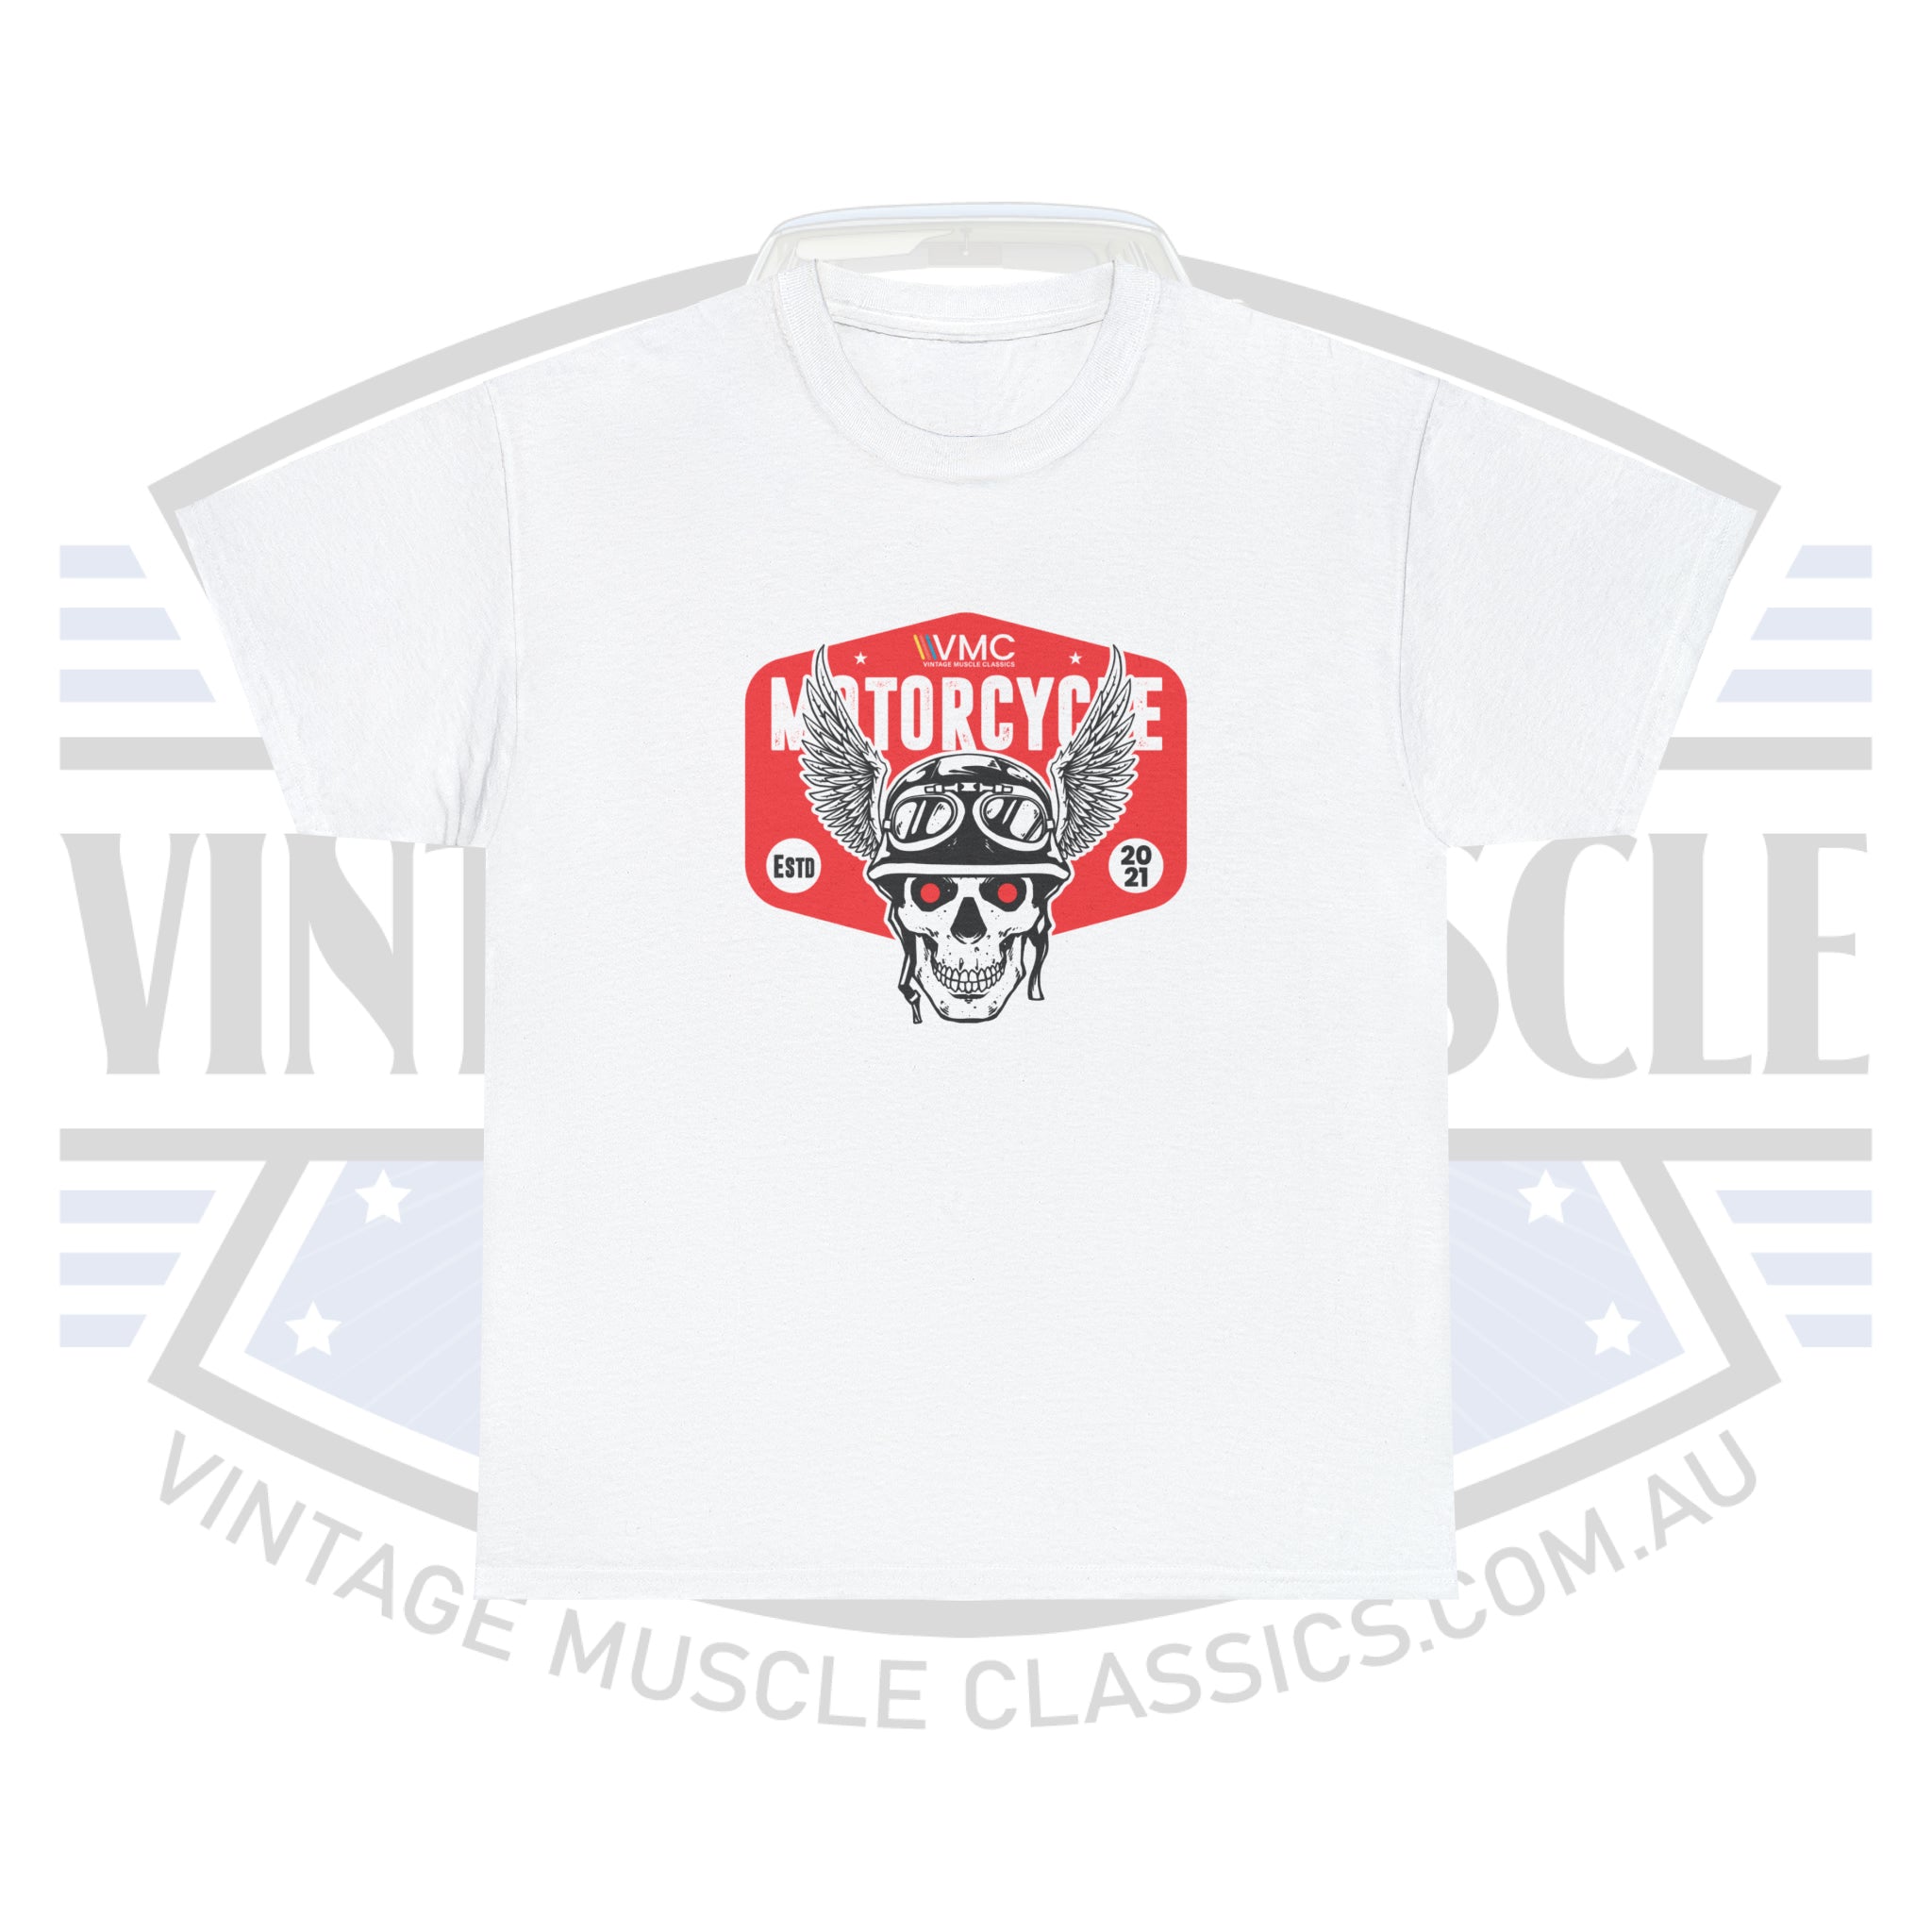 VMC Motorcycle - Unisex Heavy Cotton Tee